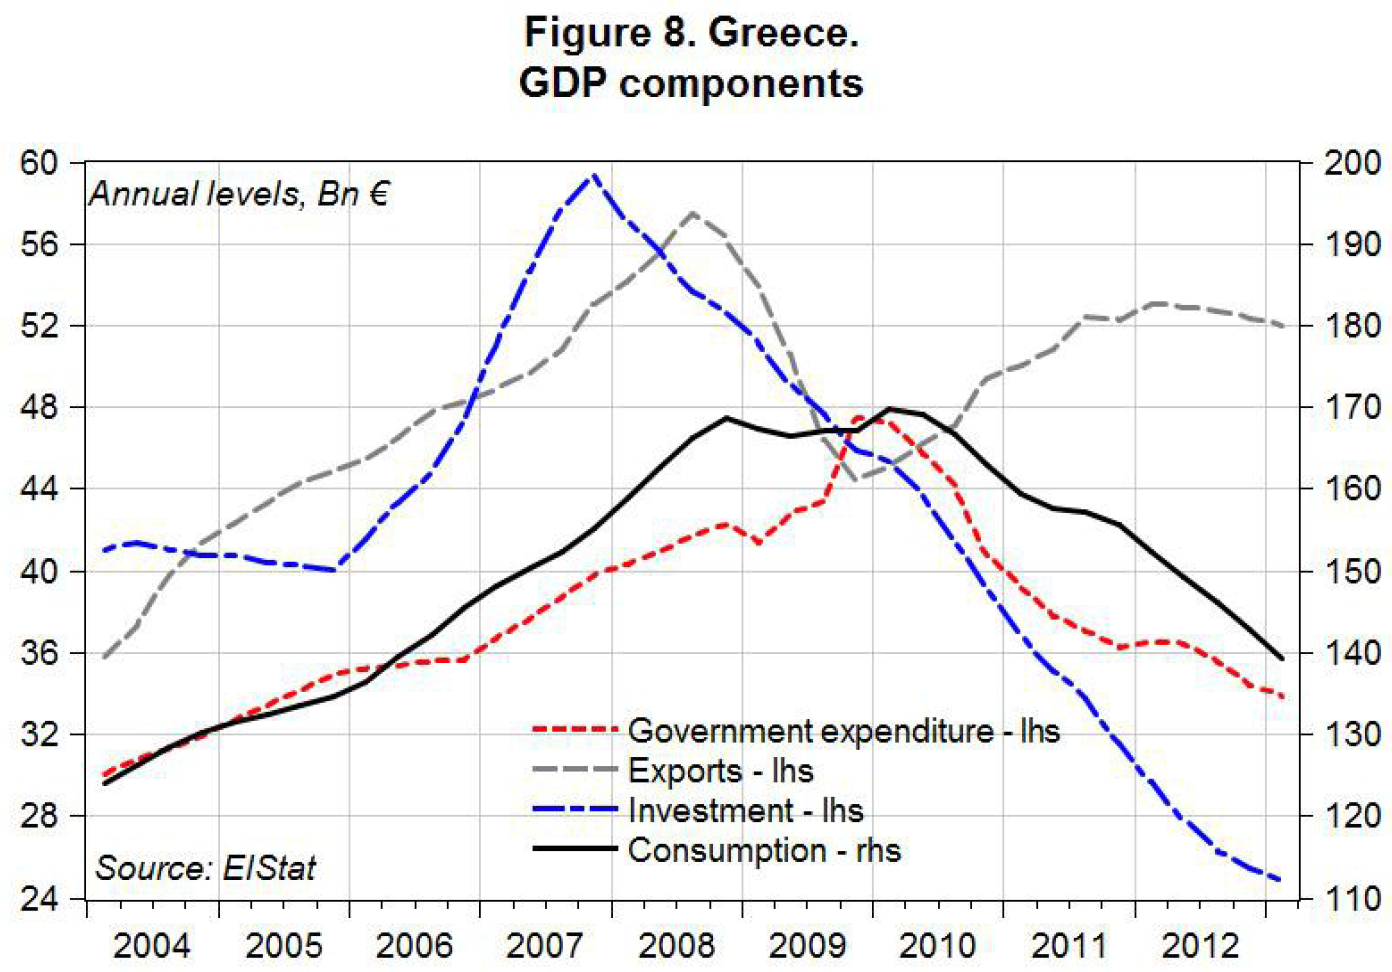 SA_Greece 2013_GDP Components_fig8